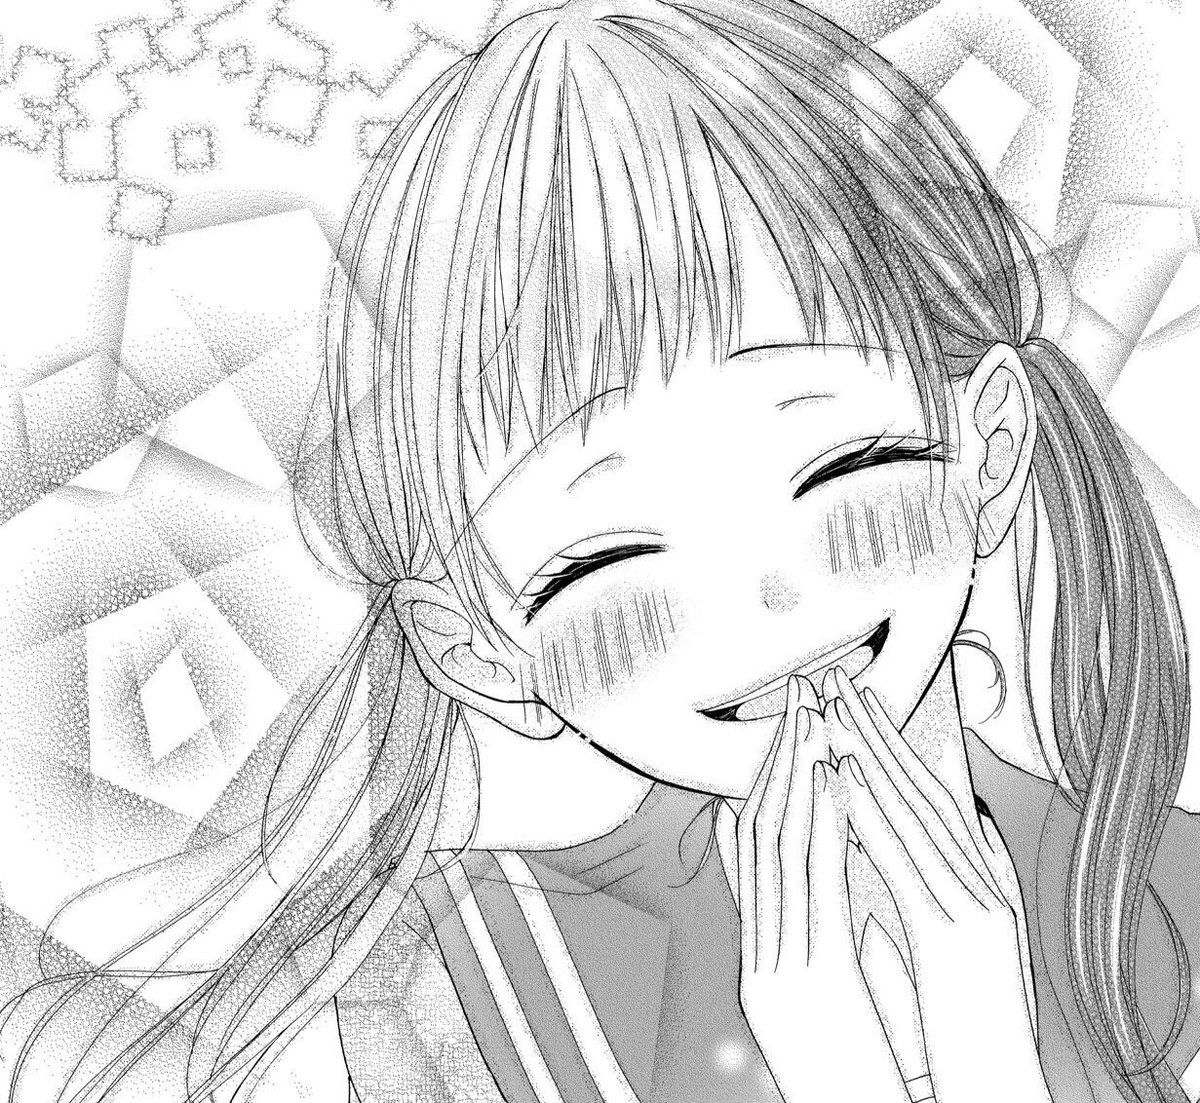 【宣伝】遅くなりましたが、発売中のSho-Comi20号に読み切り掲載させていただいております☺️?
おさげの女の子が大好きなので、個人的に作画の満足感が高い作品です??よろしくお願いします〜!!! 